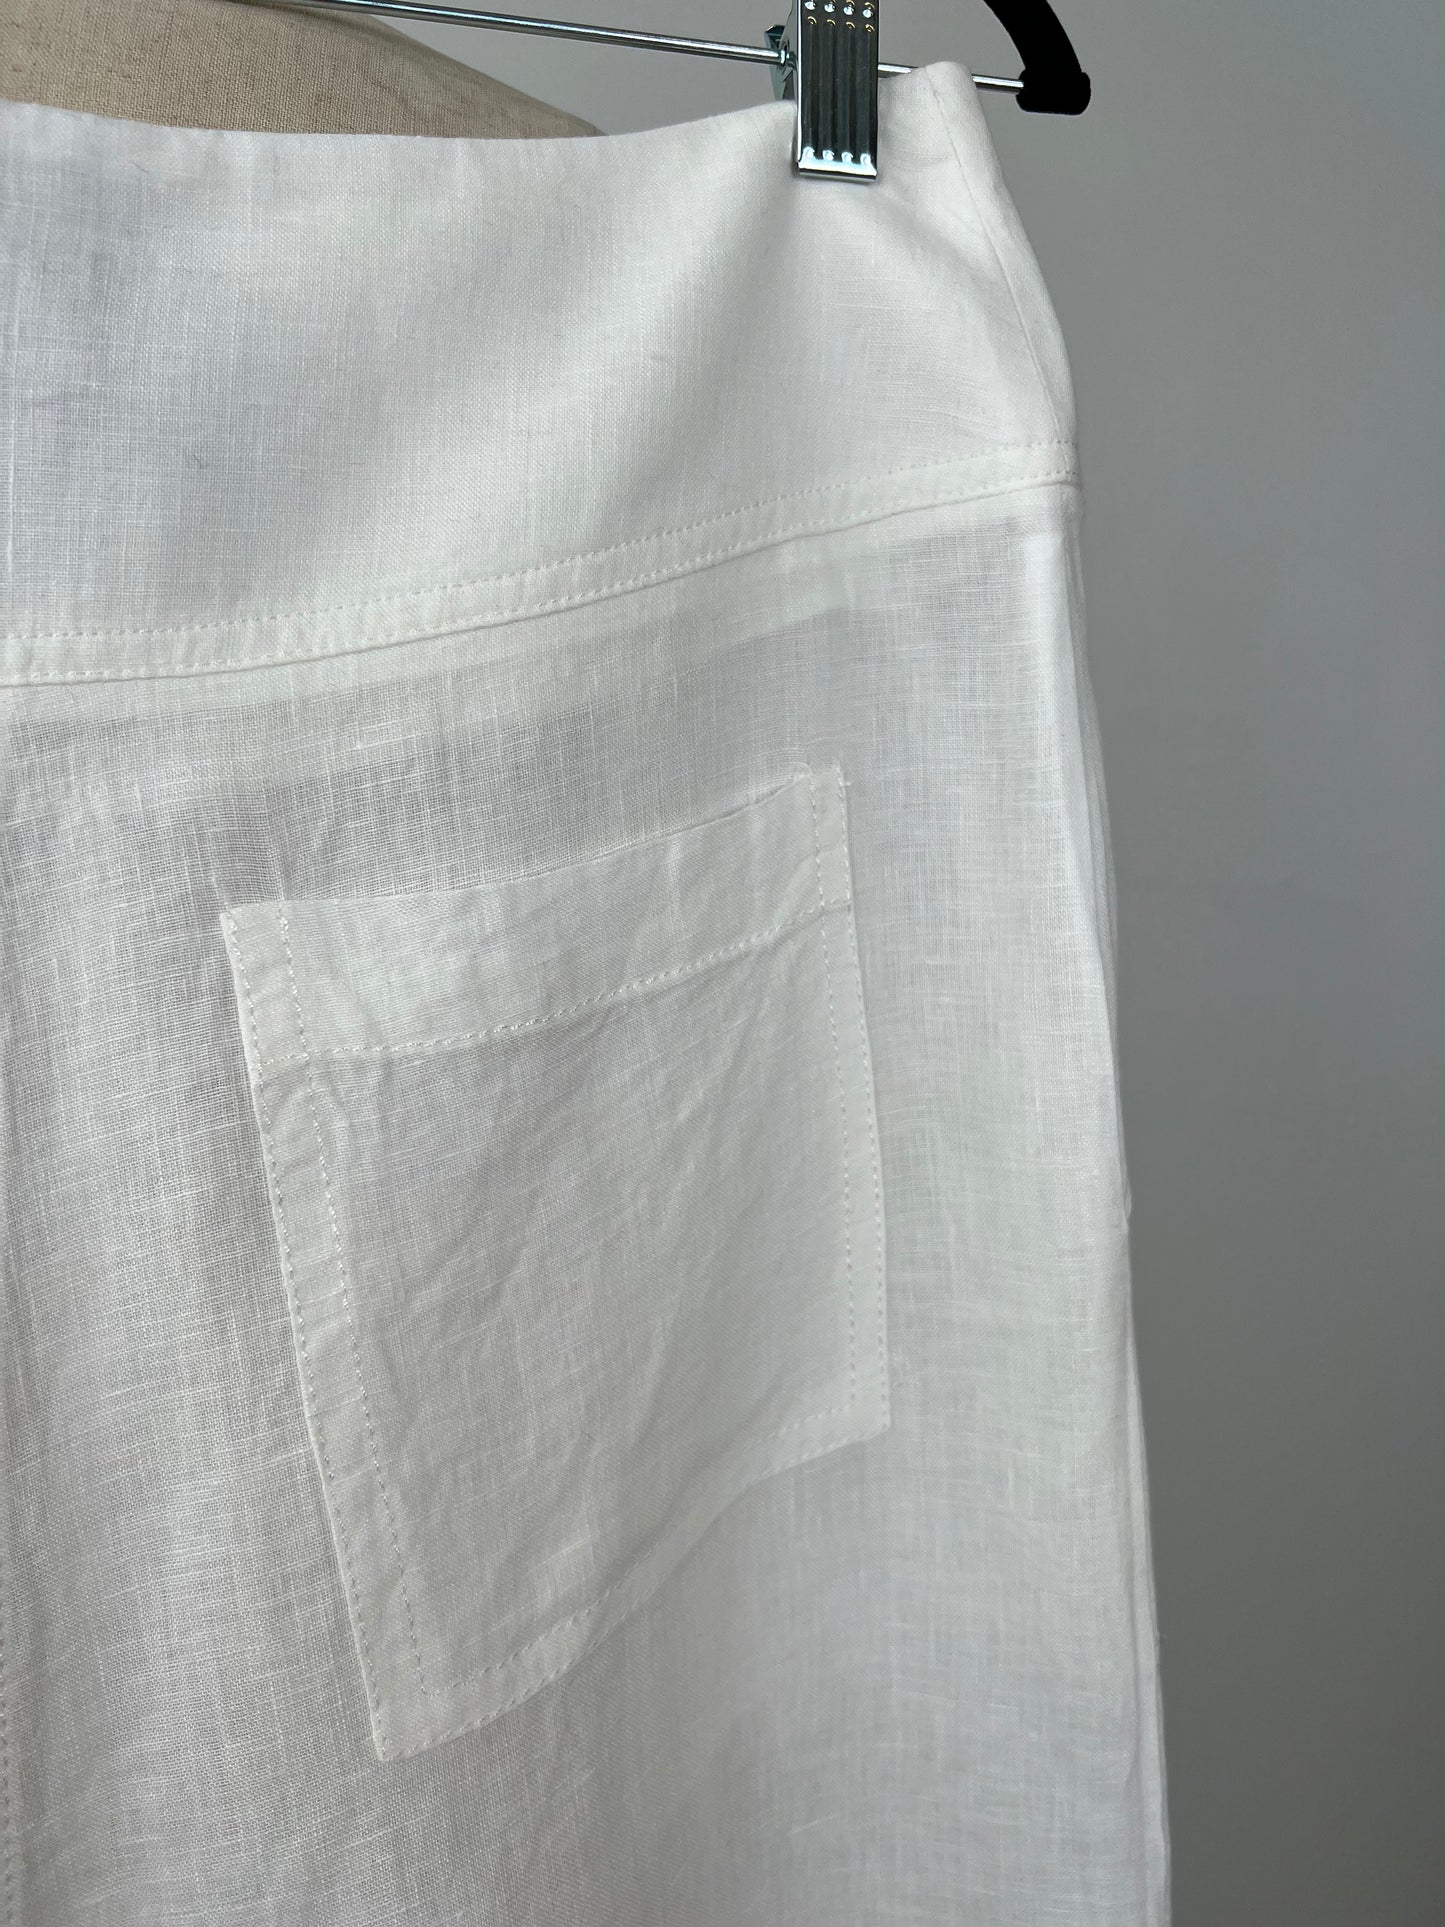 Pantalon sarouel en lin blanc crème (S)